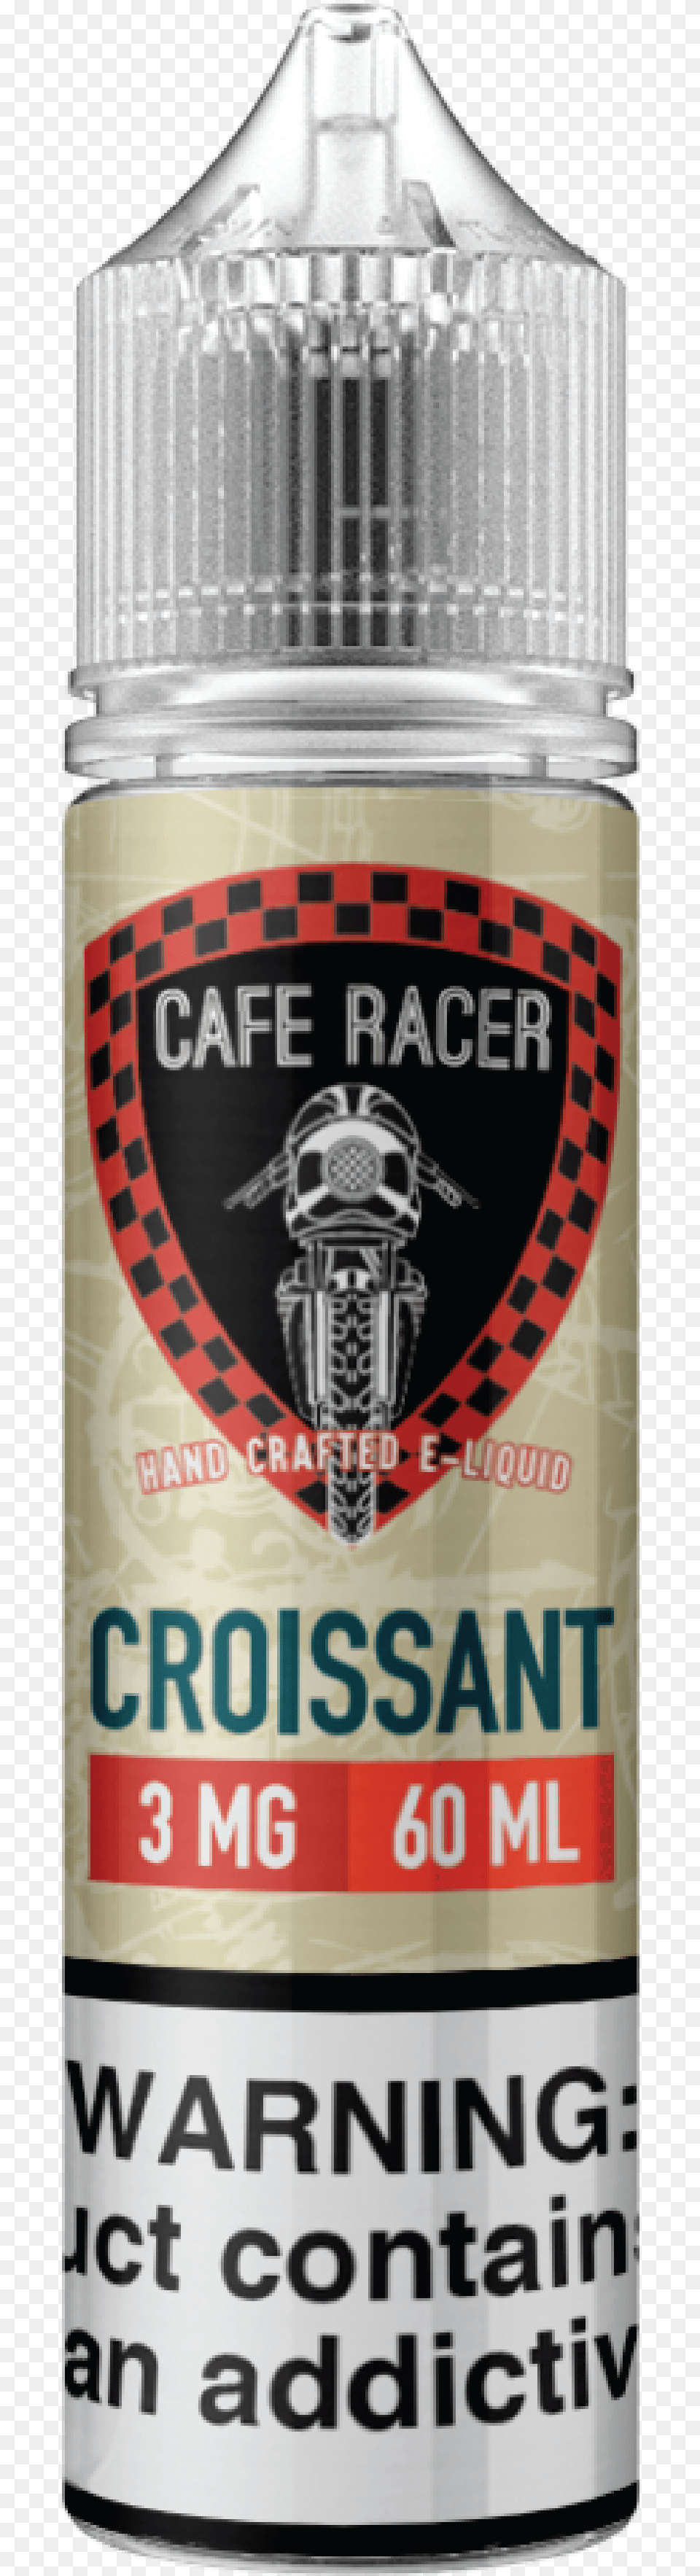 Croissant Liquid Cafe Racer Croissant, Bottle, Can, Tin Free Transparent Png